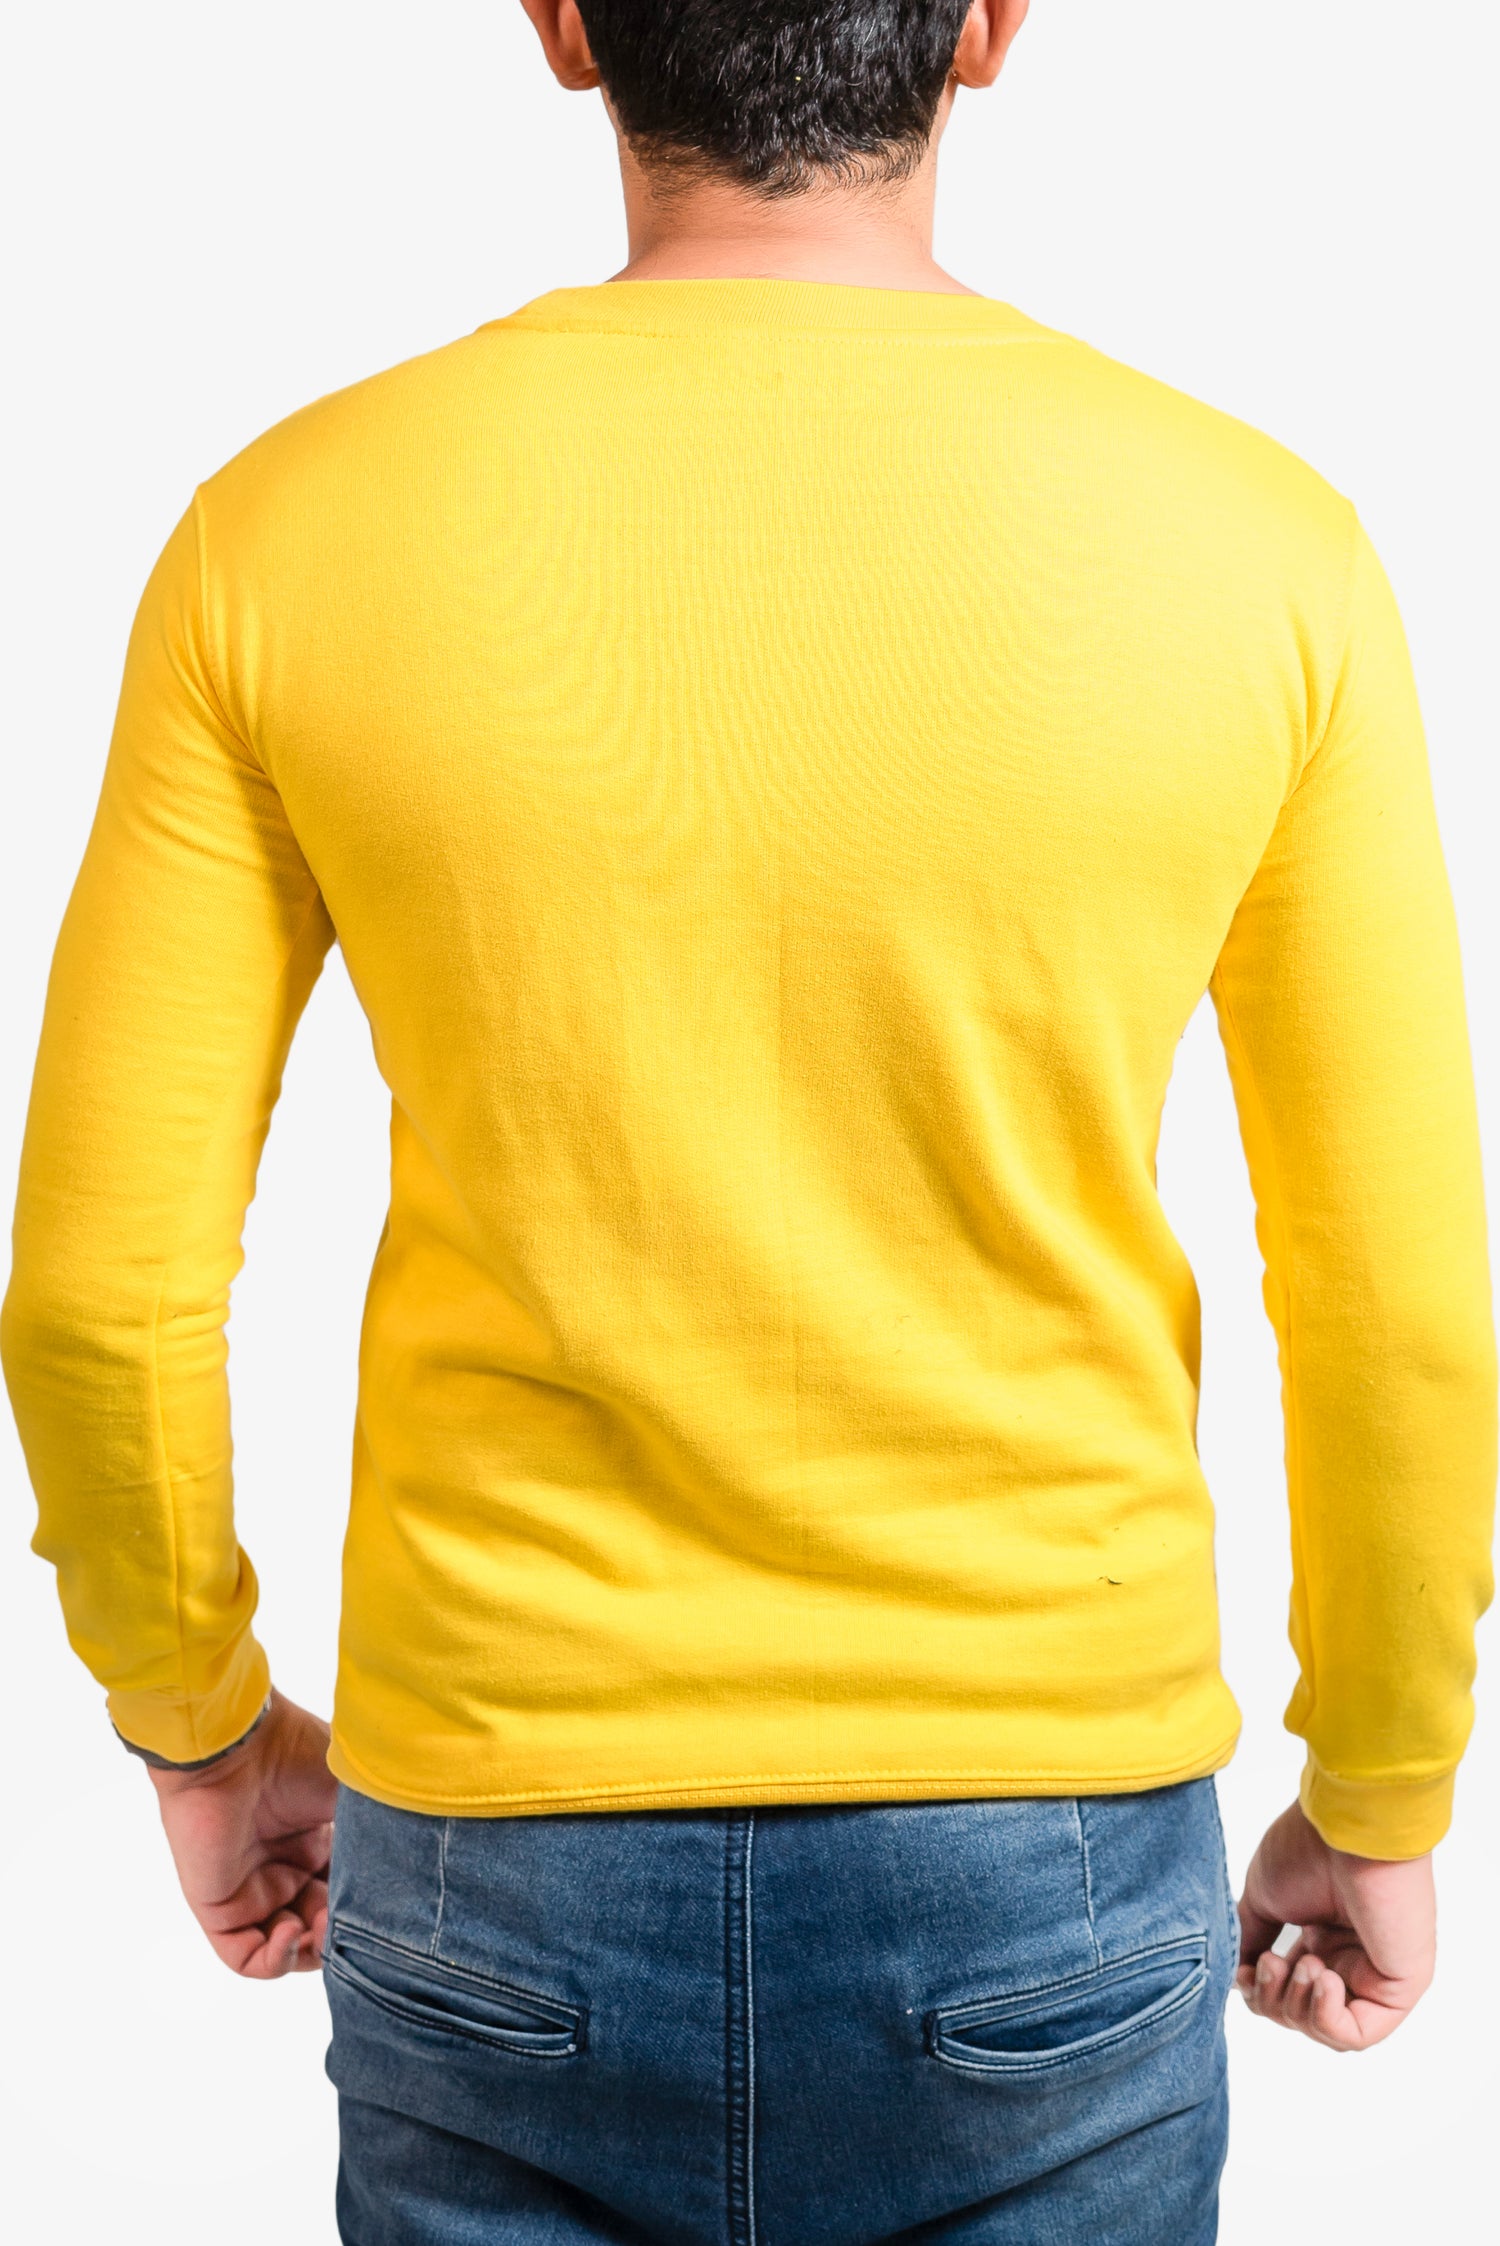 Basic Yellow Sweatshirt // Men - teehoodie.co